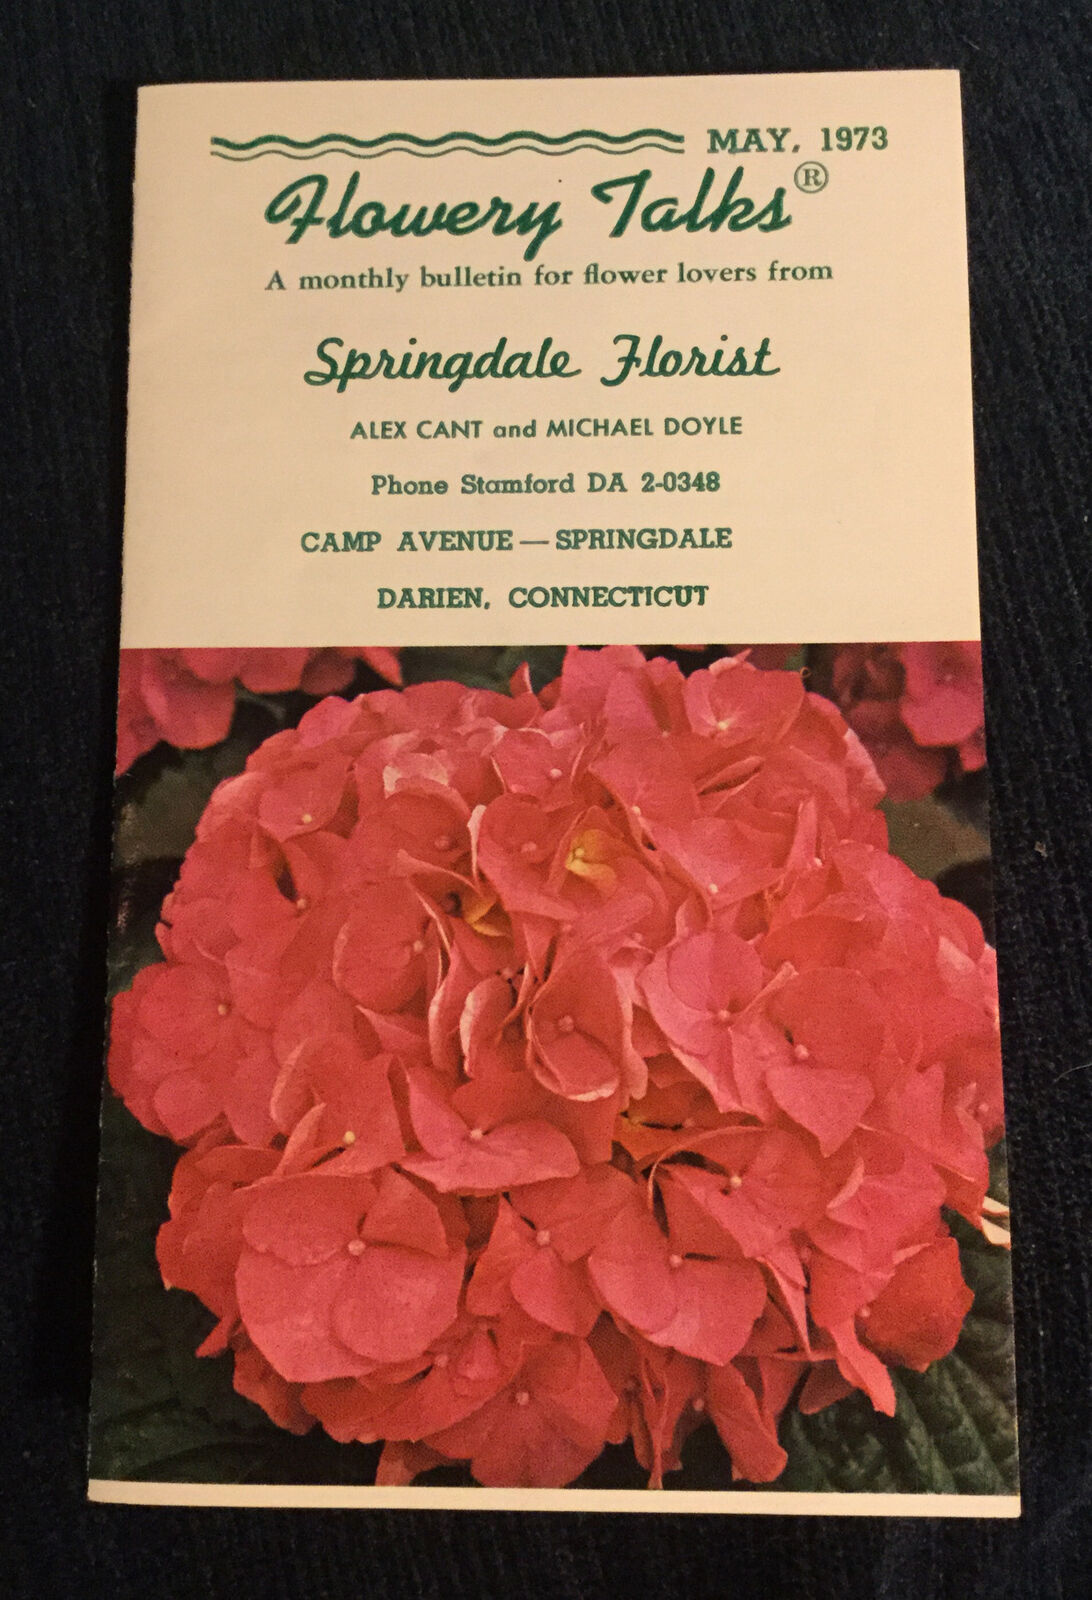 Flowery Talks Springdale Florist Darien CT Advertising Brochure 1973